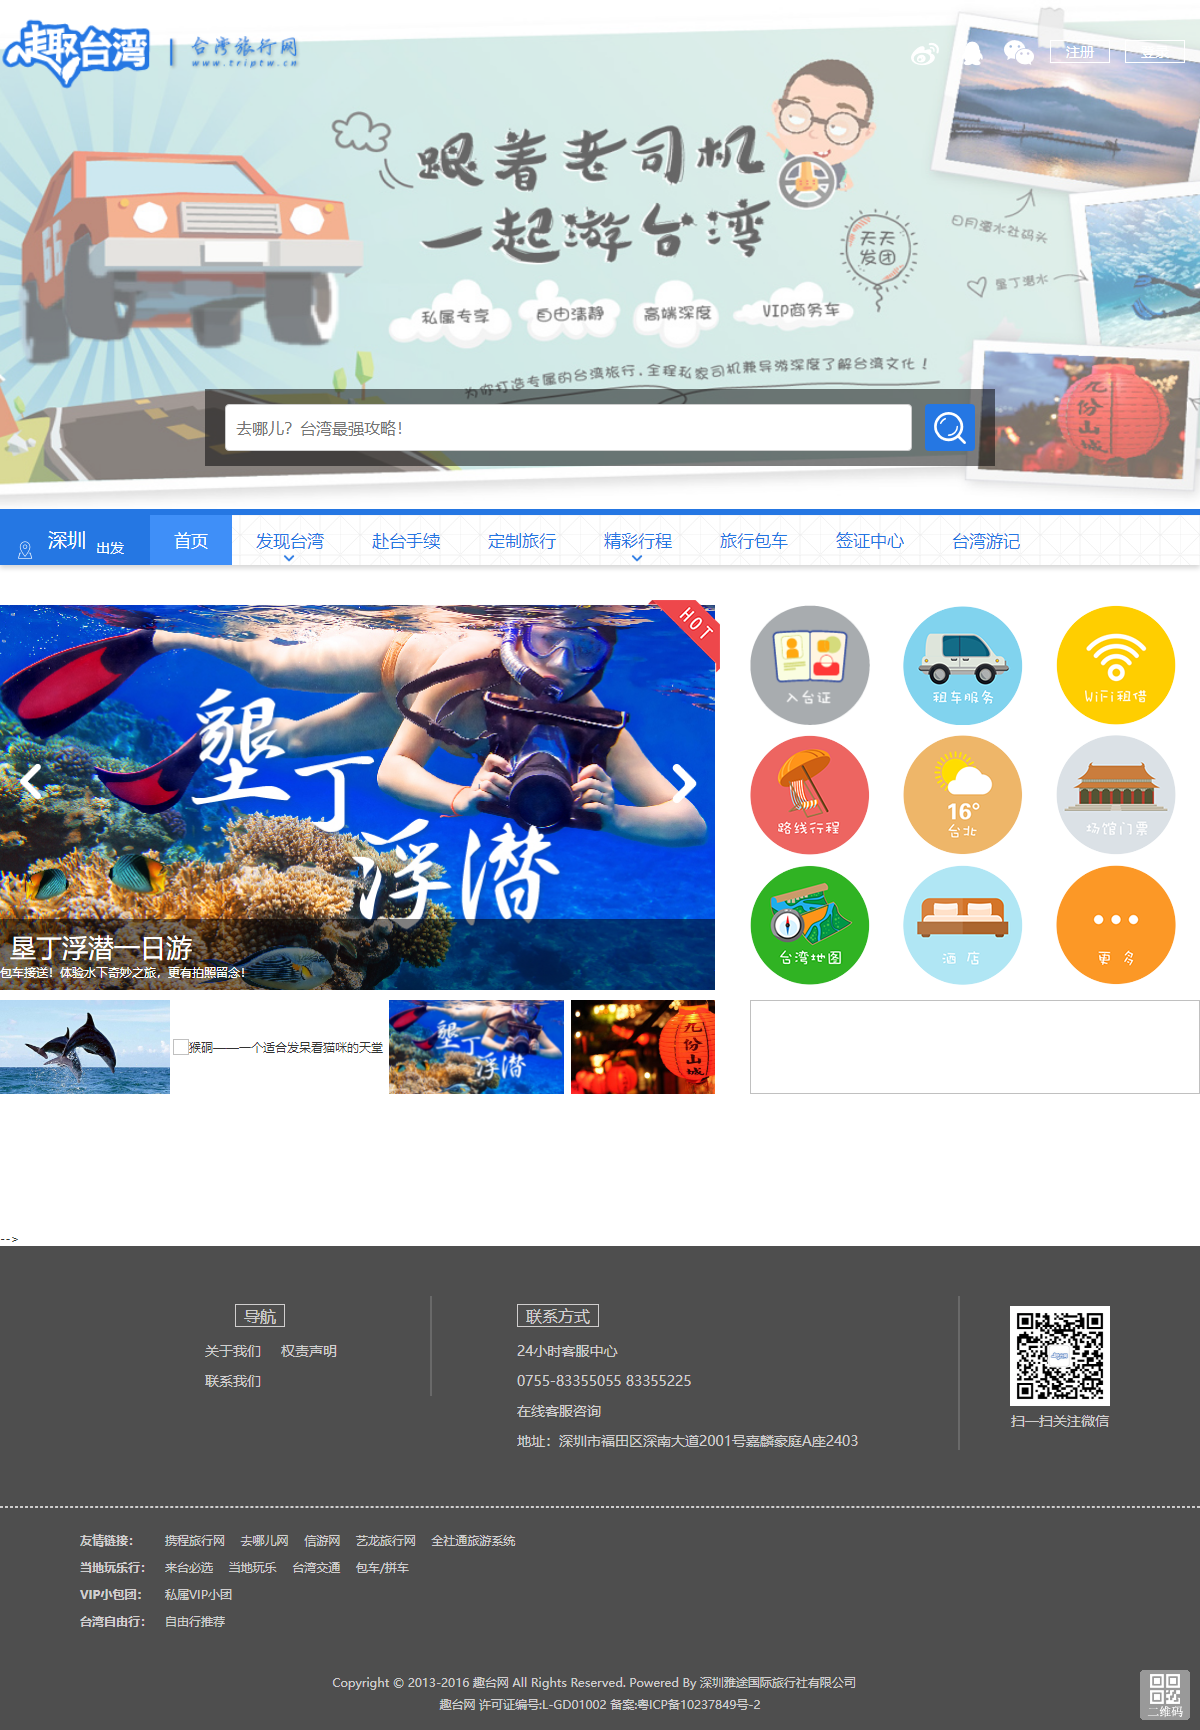 深圳雅途国际旅行社有限公司网站案例